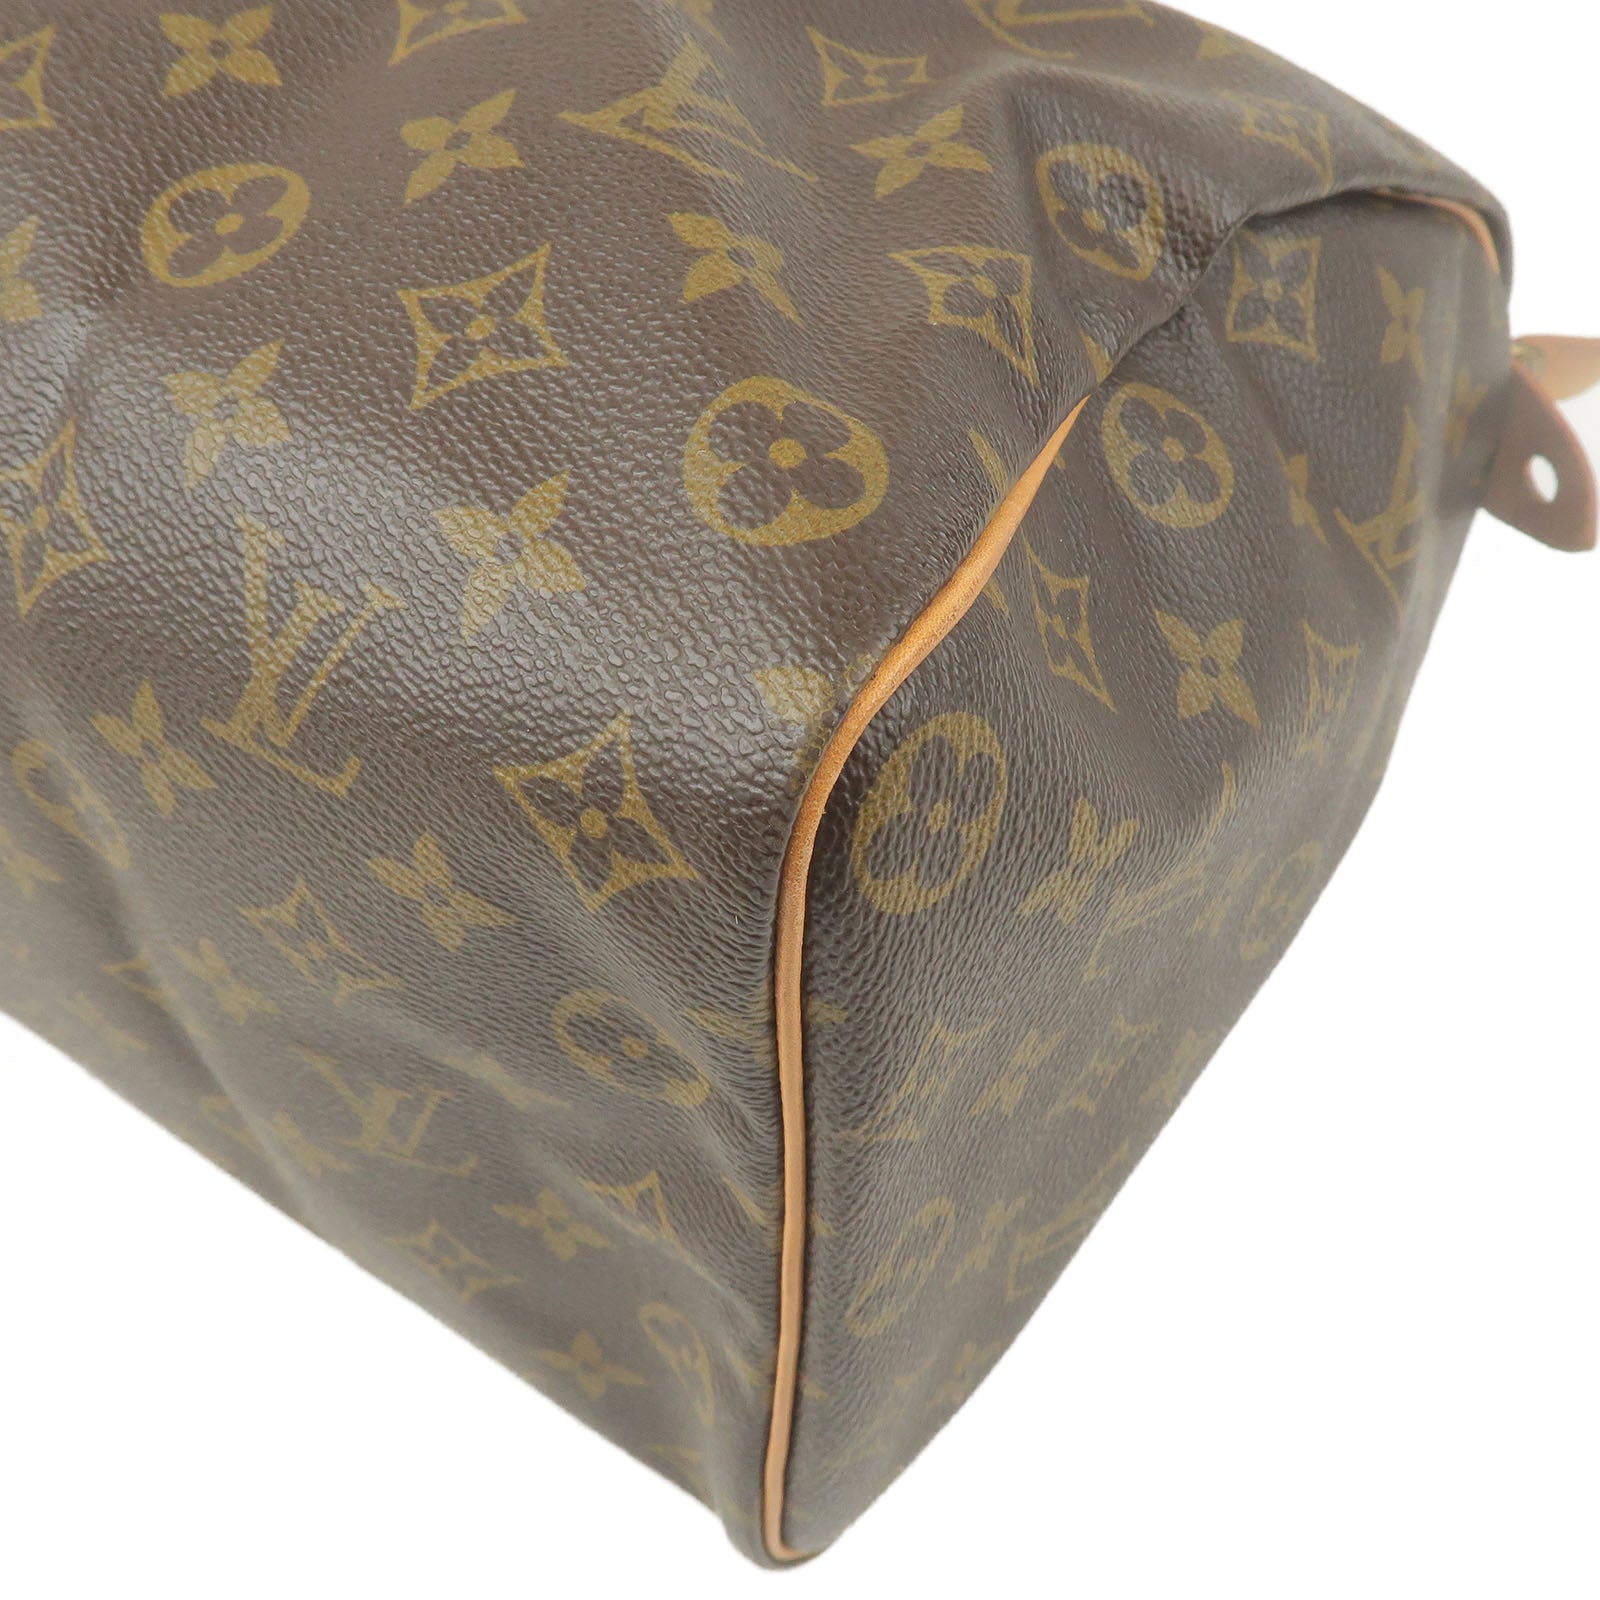 Louis Vuitton, Bags, Louis Vuitton Speedy 35 Handbag Purse